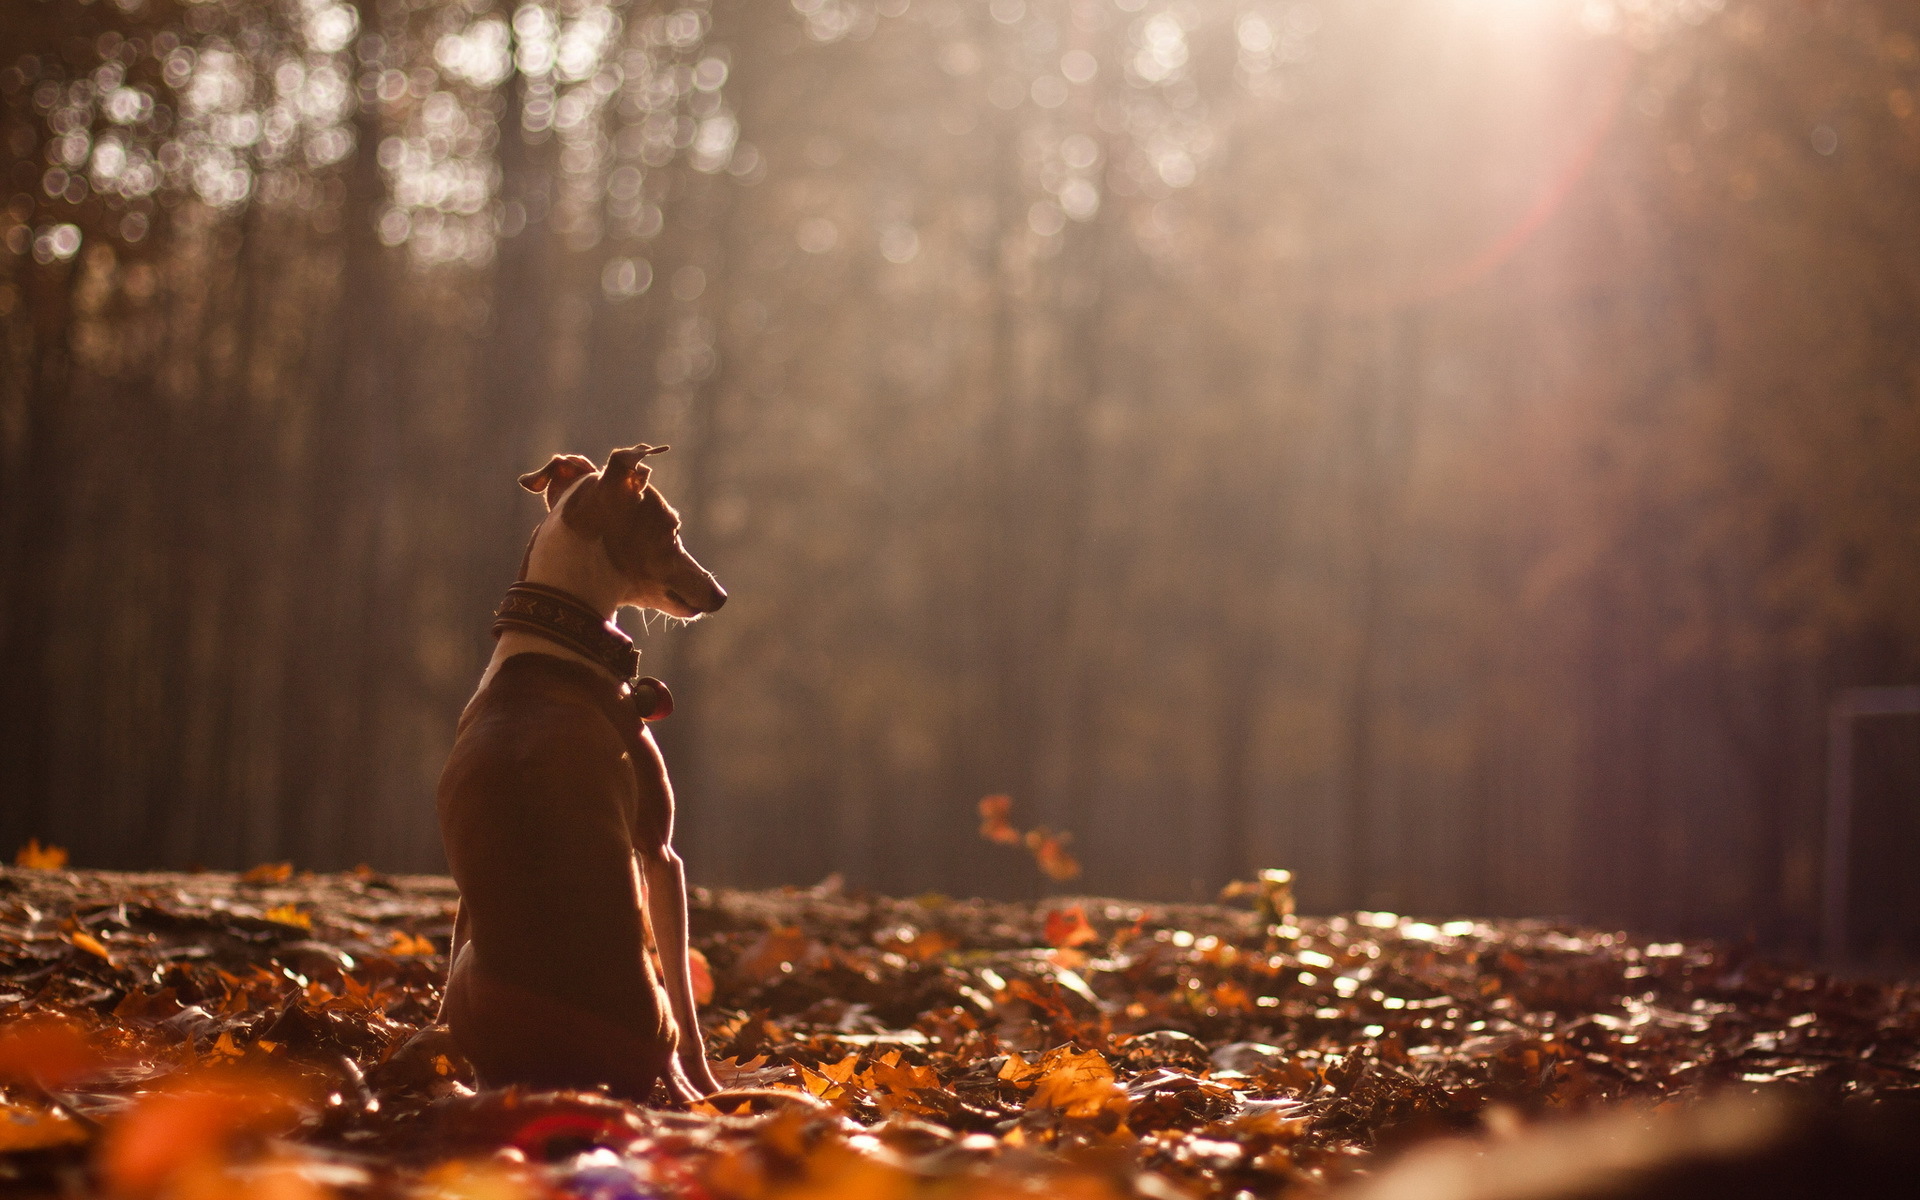 Фото пес ошейник листва - бесплатные картинки на Fonwall